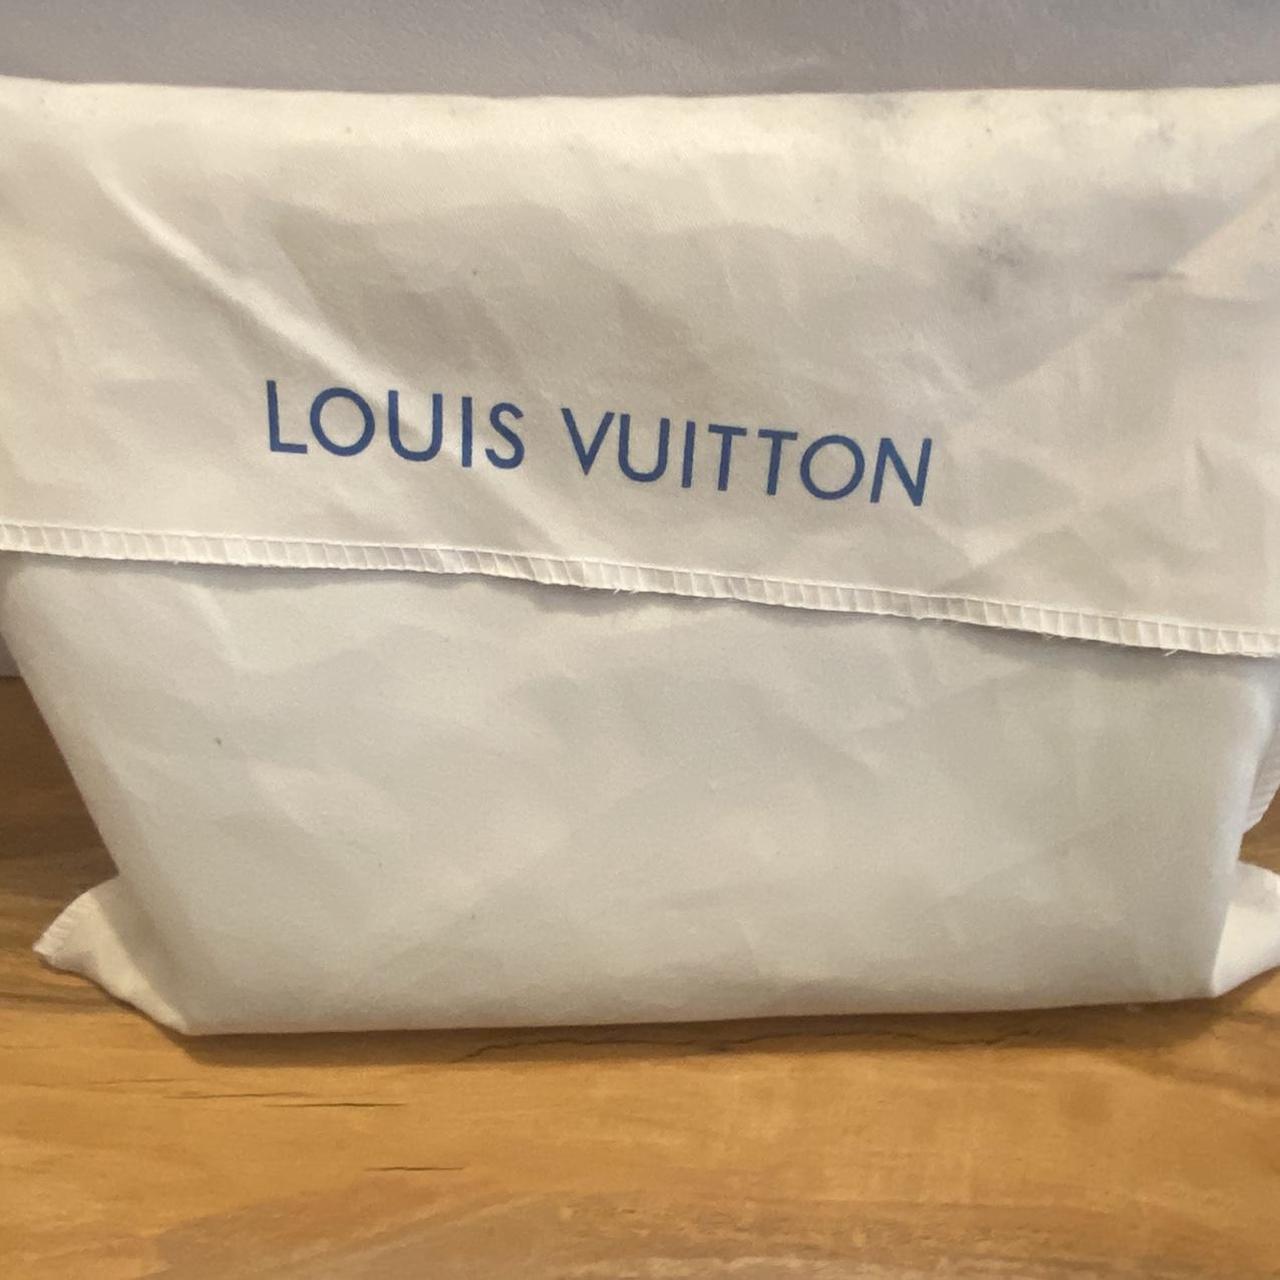 Louis Vuitton Toilette Toiletry Bag Brand new Comes... - Depop